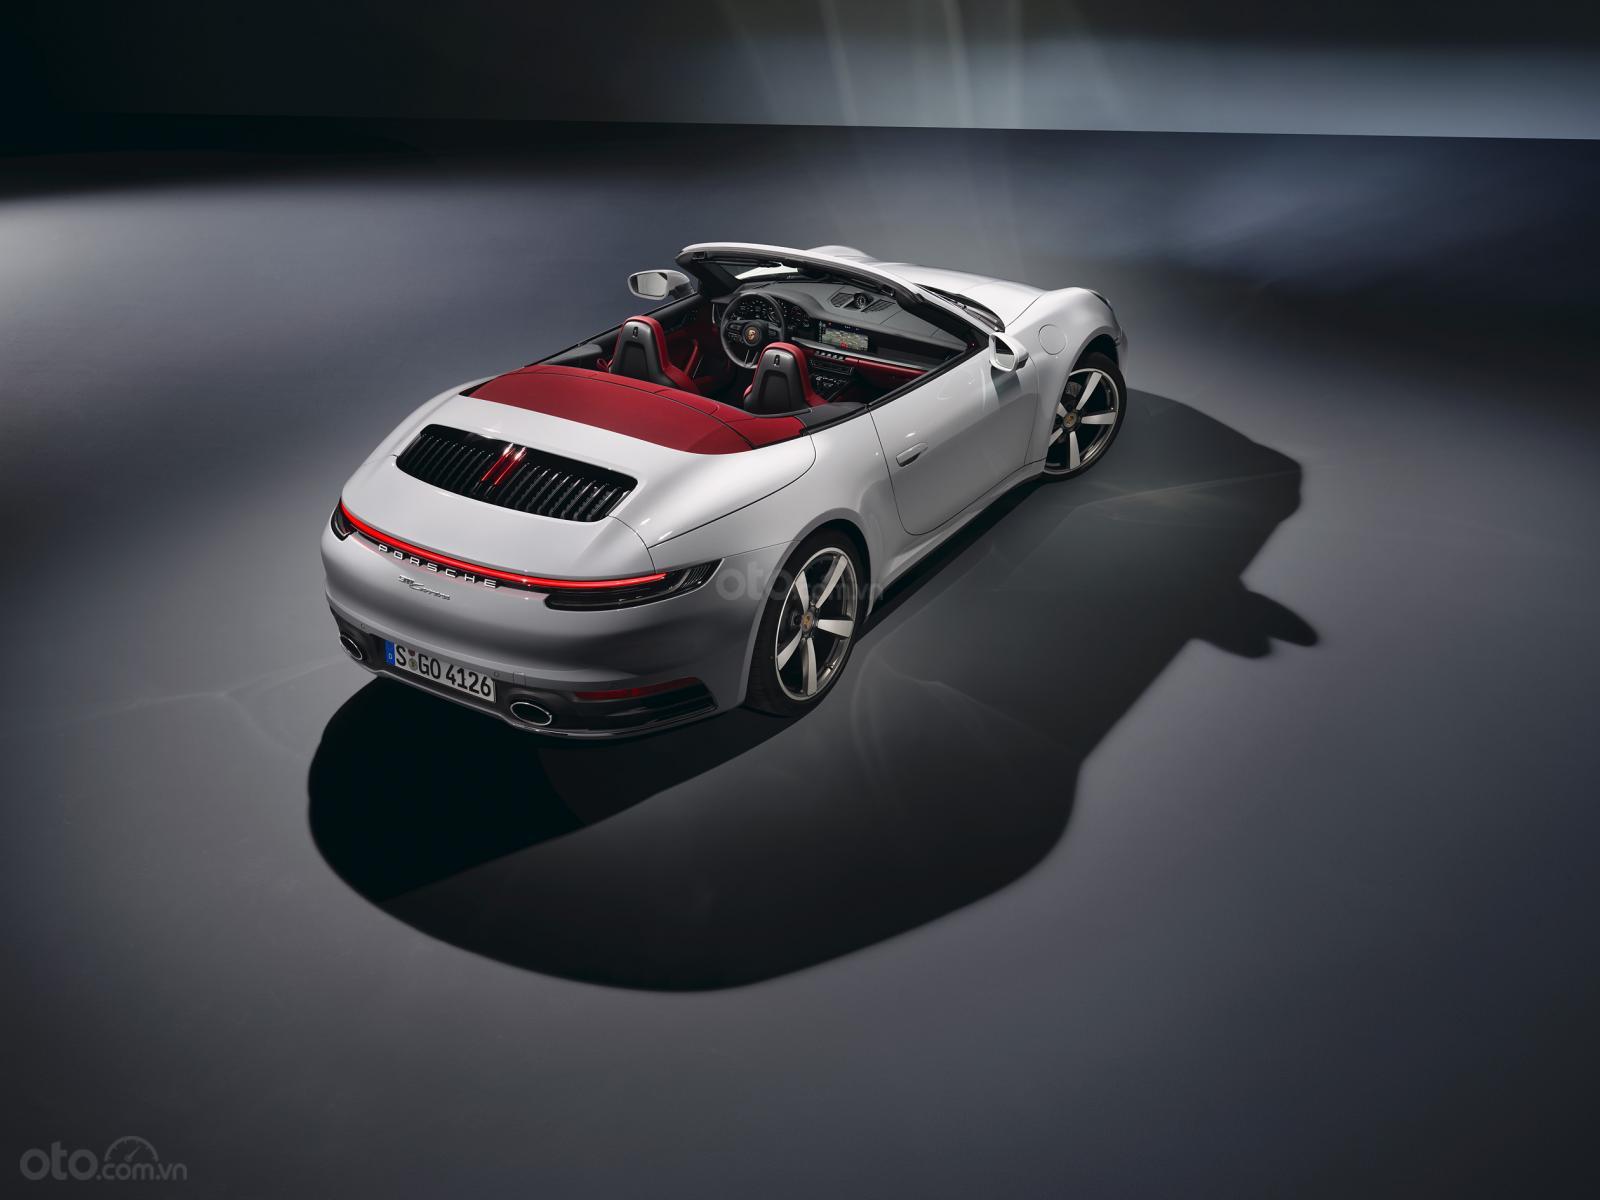 Carrera là phiên bản dành cho những người yêu thích và bắt đầu tiếp cận dòng xe huyền thoại Porsche 911 1.